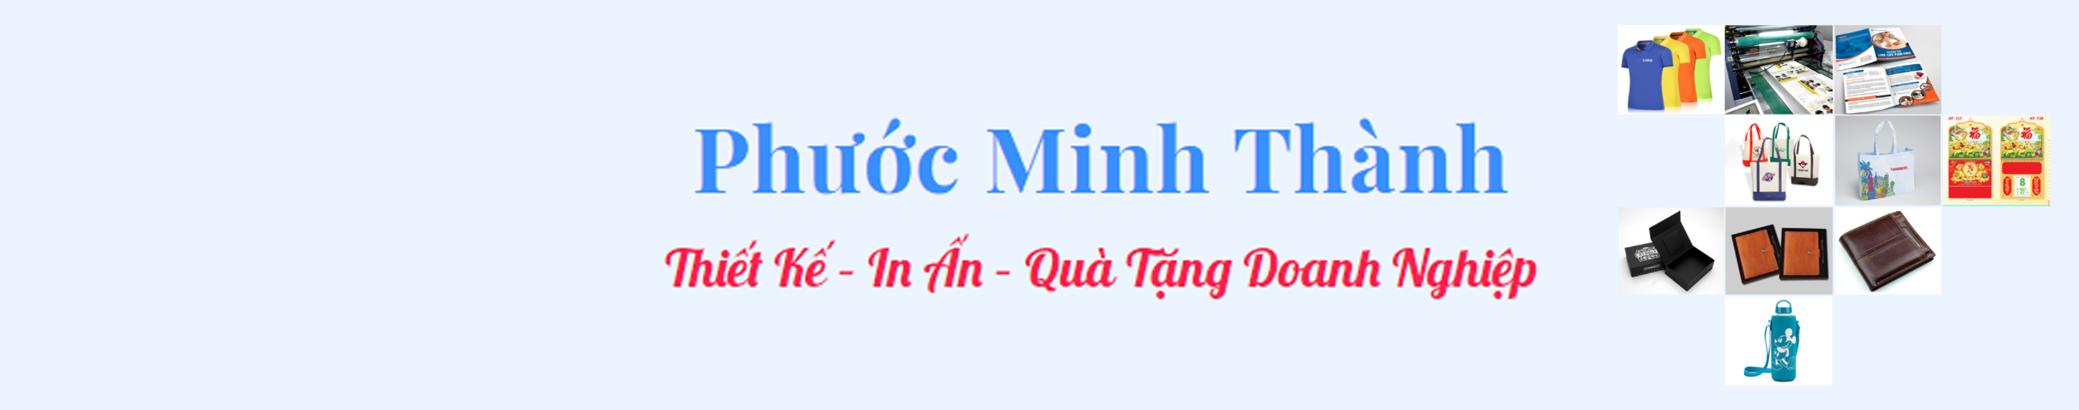 Thành Phước Minh's profile banner